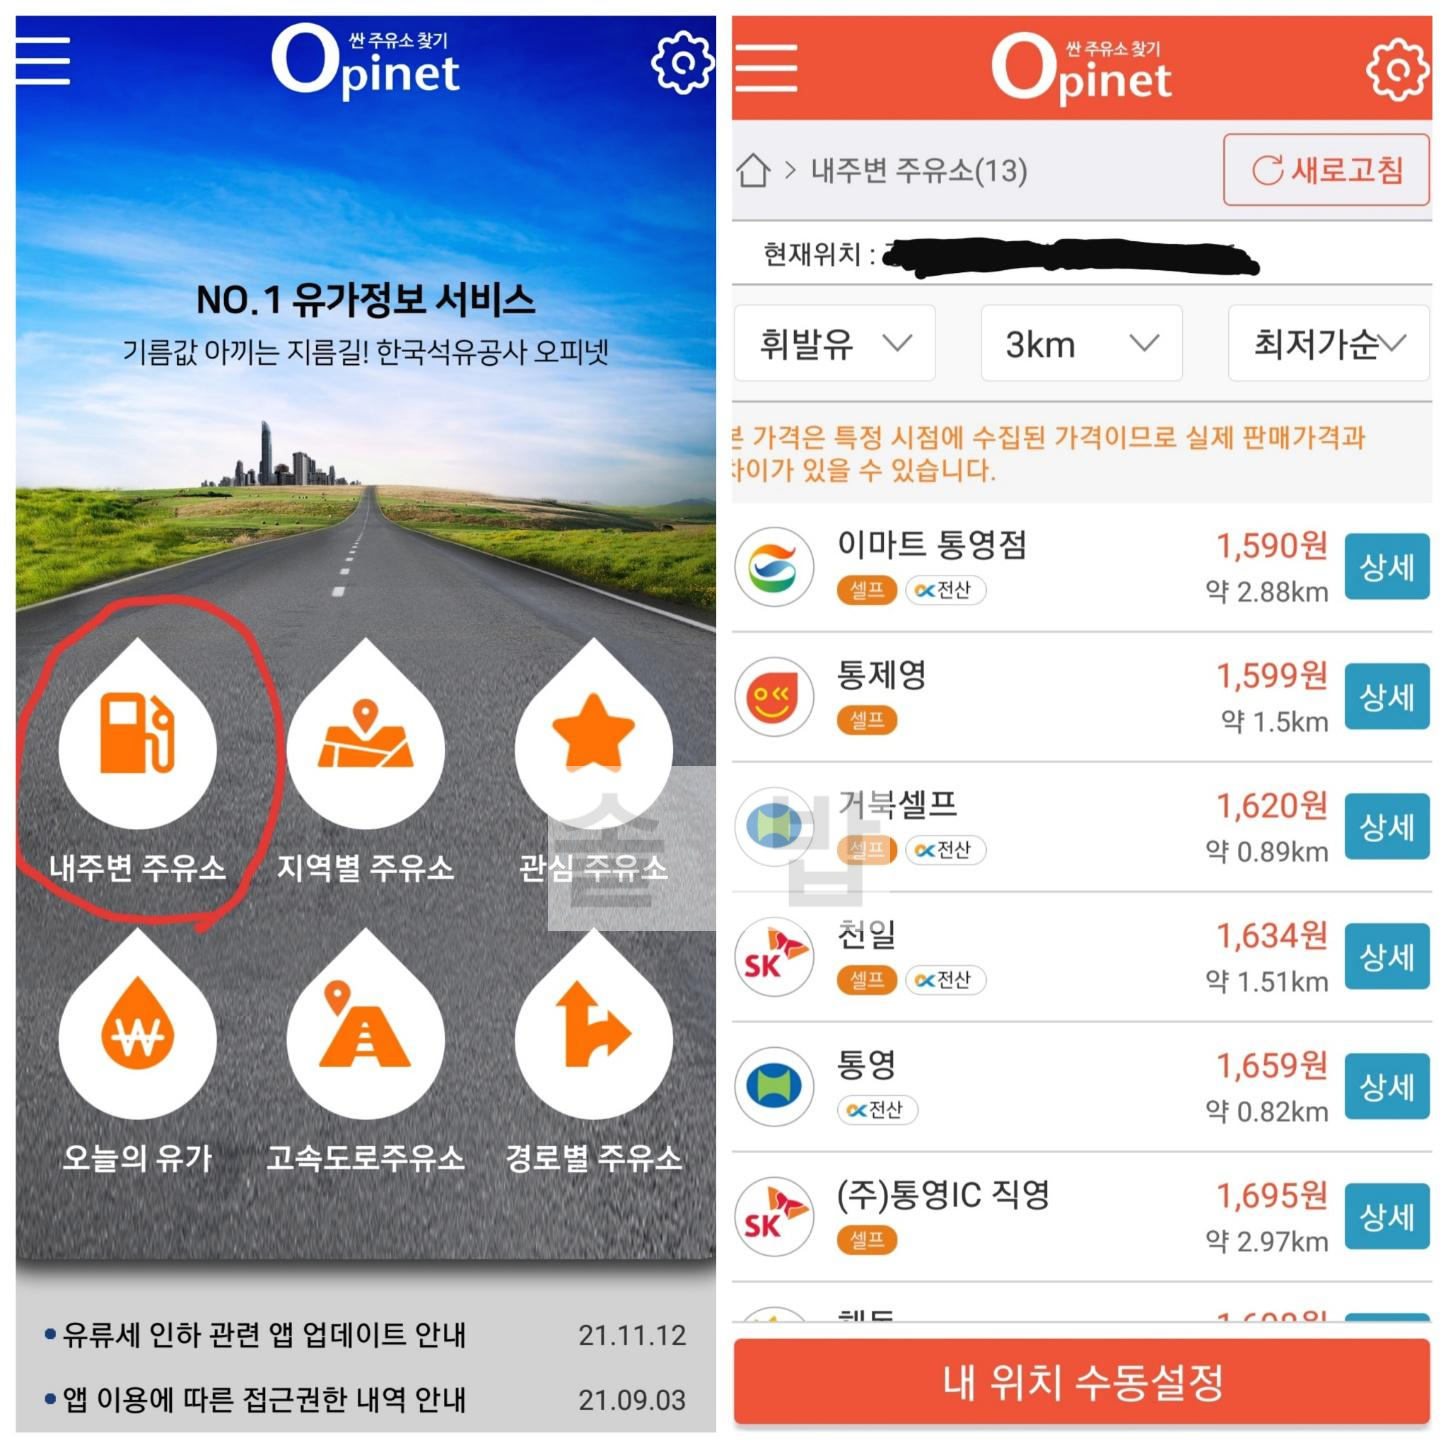 오피넷-앱의-내-주변-주유소-찾기-기능으로-근처-3km에서-가장-싼-주유소가-검색된다